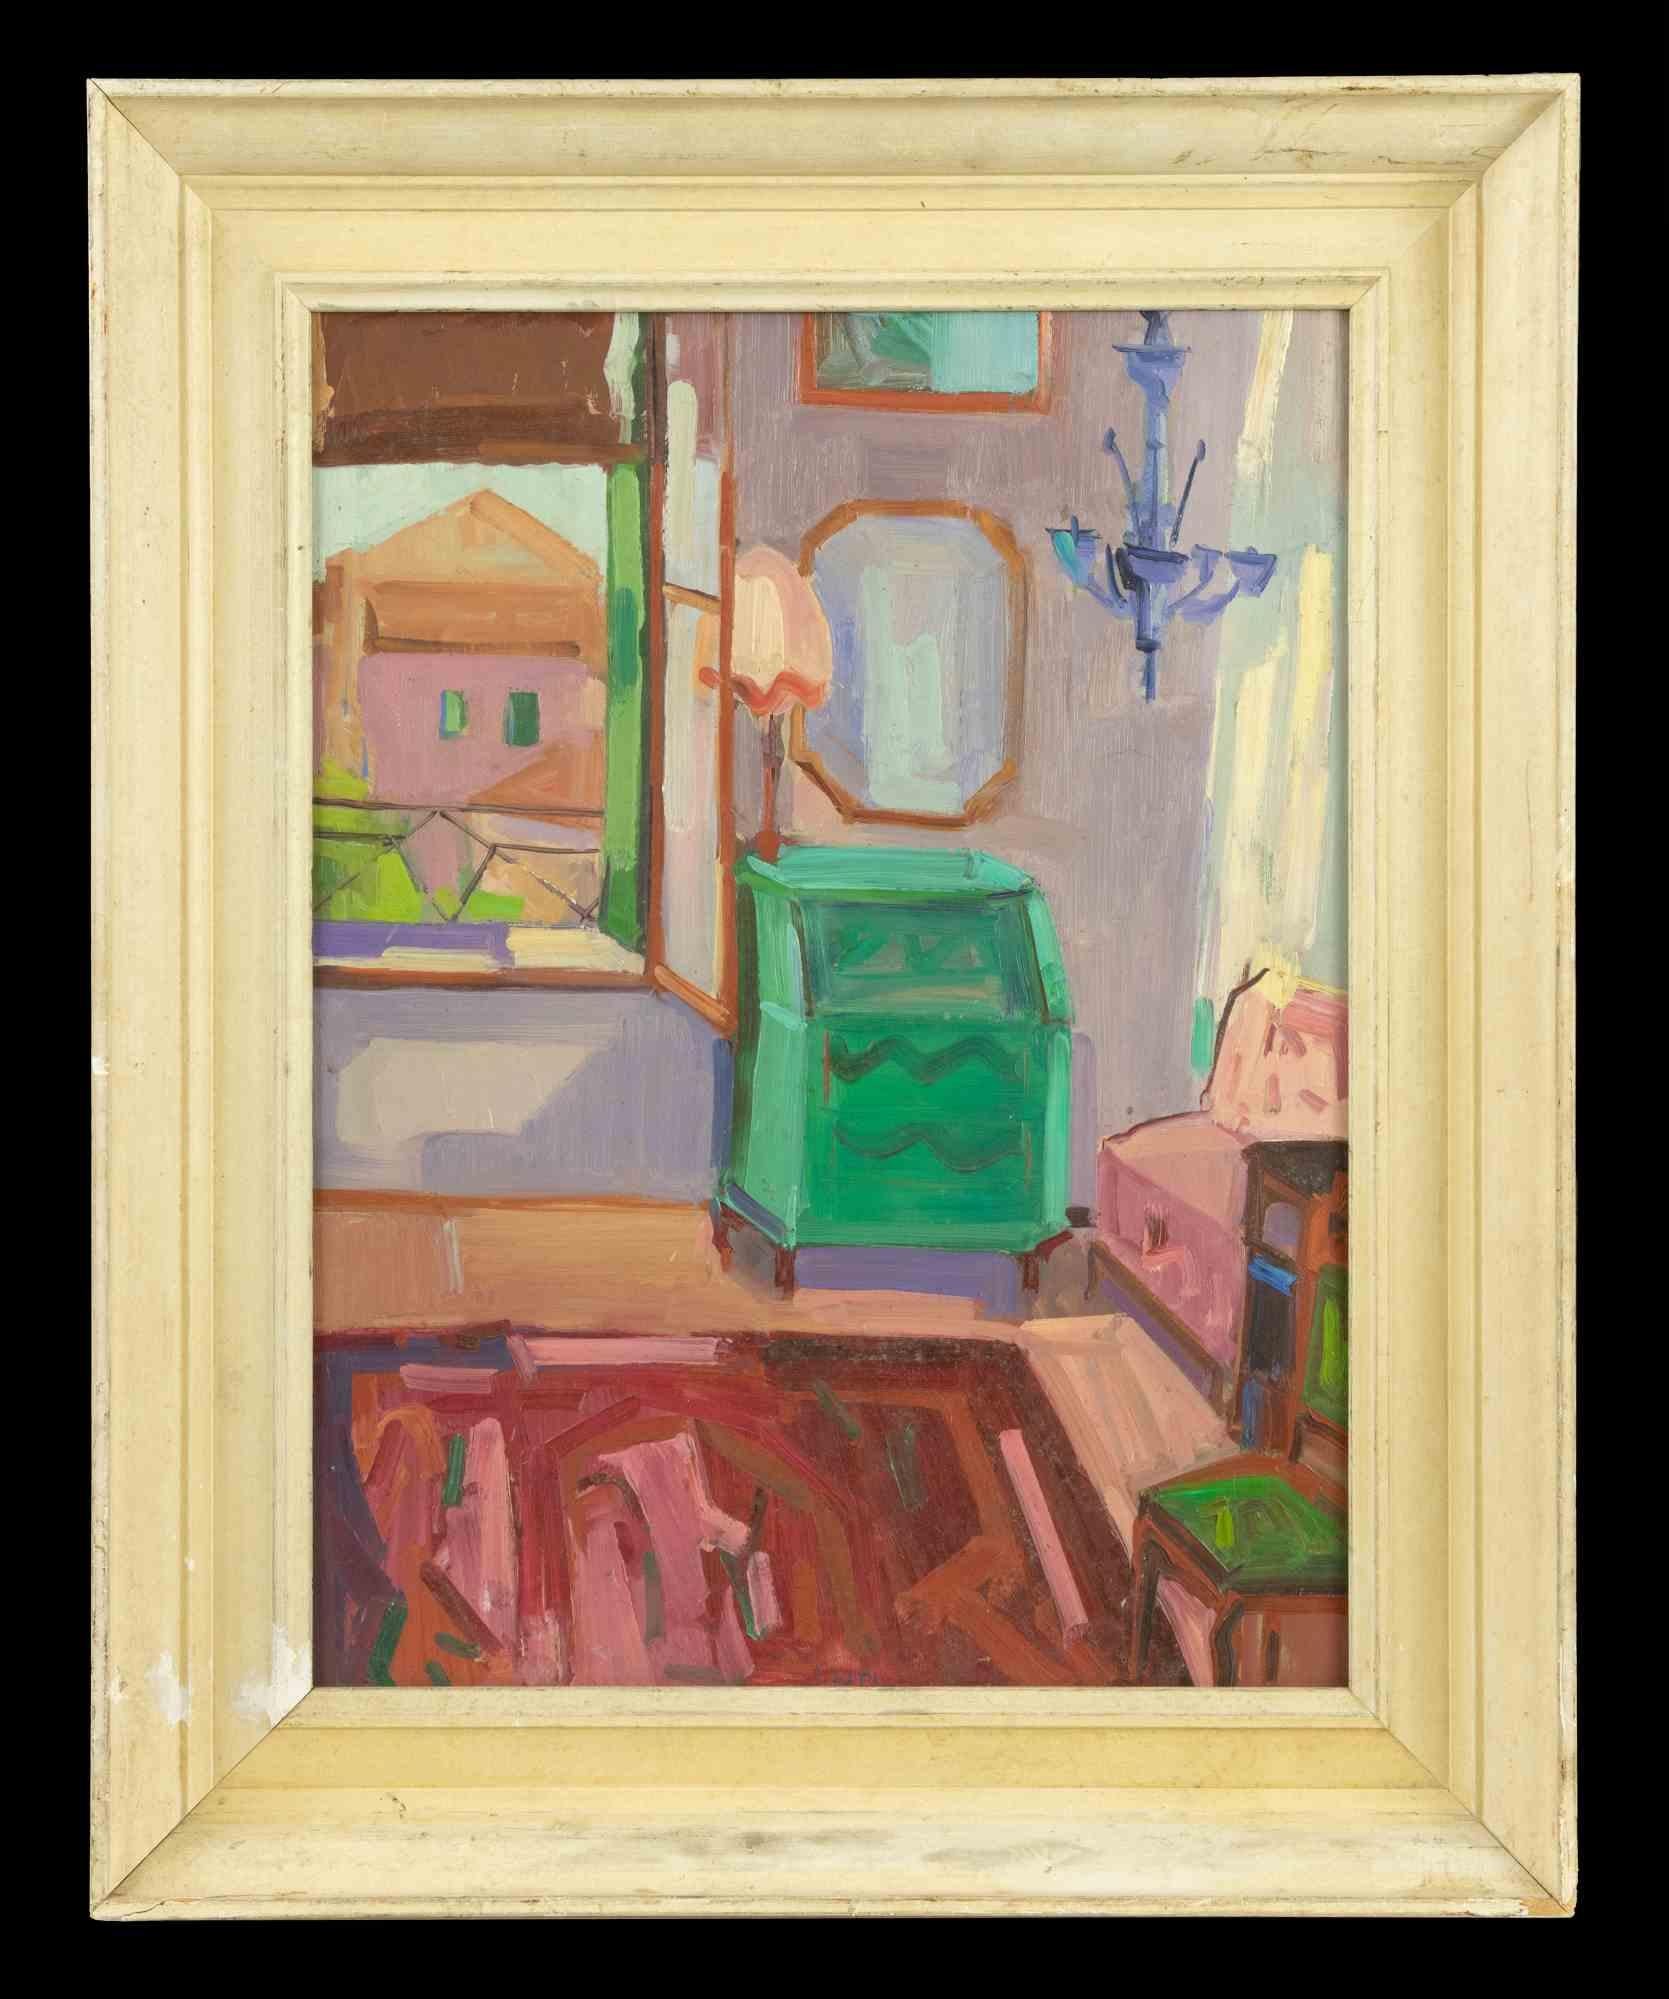 Das Schlafzimmer ist ein originelles modernes Kunstwerk, das von einem Künstler aus der Mitte des 20. Jahrhunderts geschaffen wurde und Jane Levy zugeschrieben wird.

Gemischtes farbiges Öl auf Karton.

Inklusive Rahmen: 53,5 x 44 cm